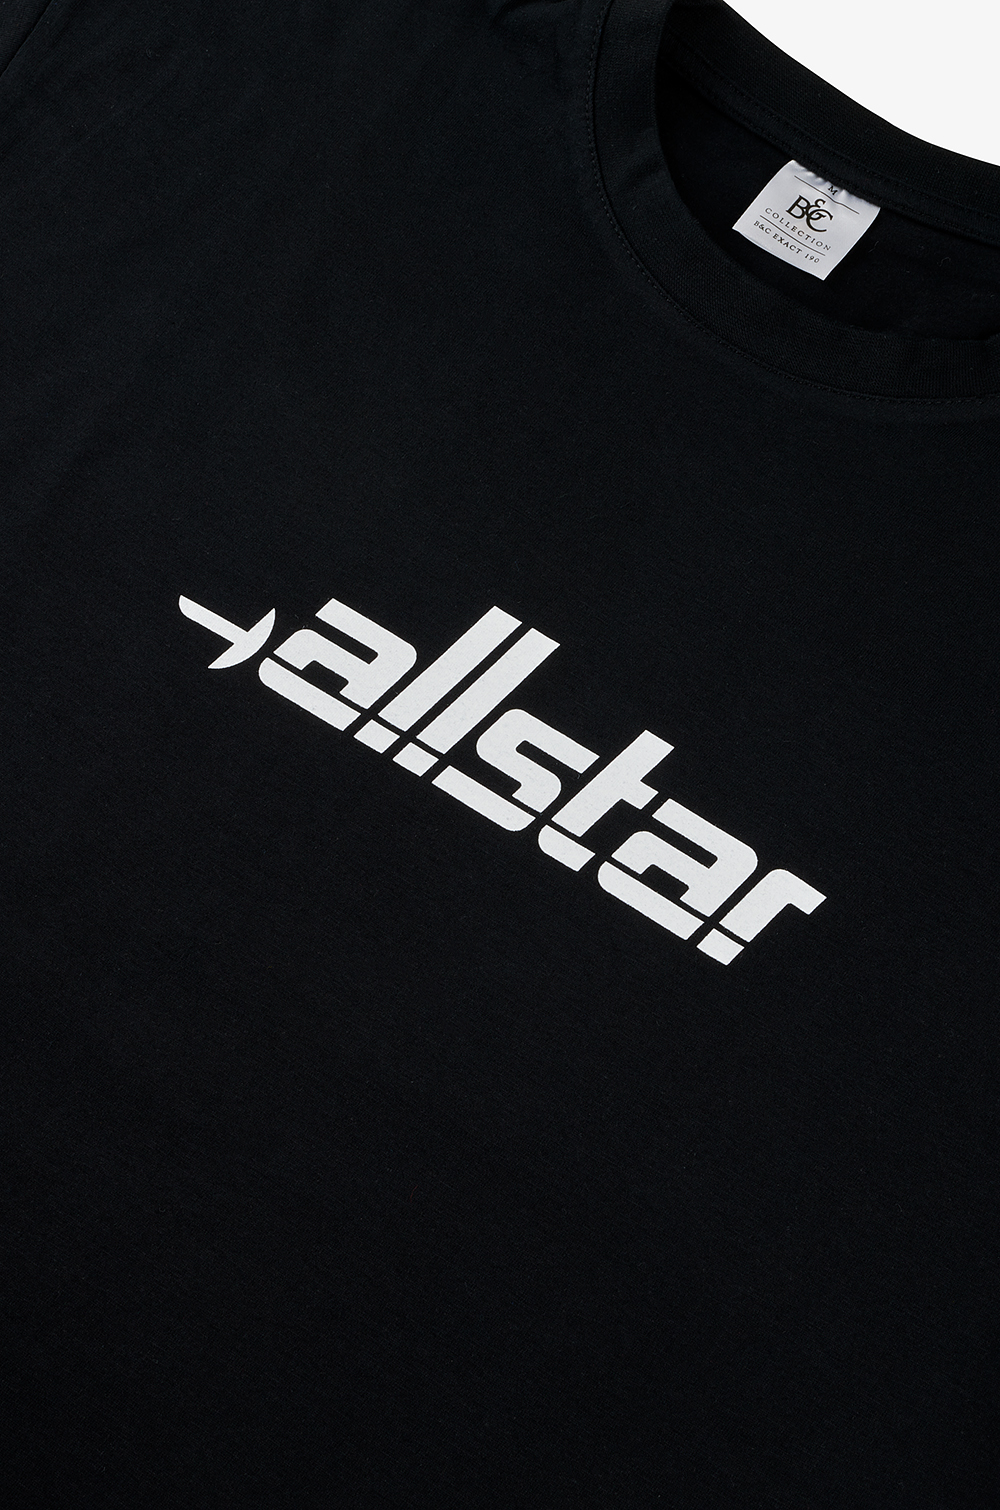 allstar T-shirt, black, S